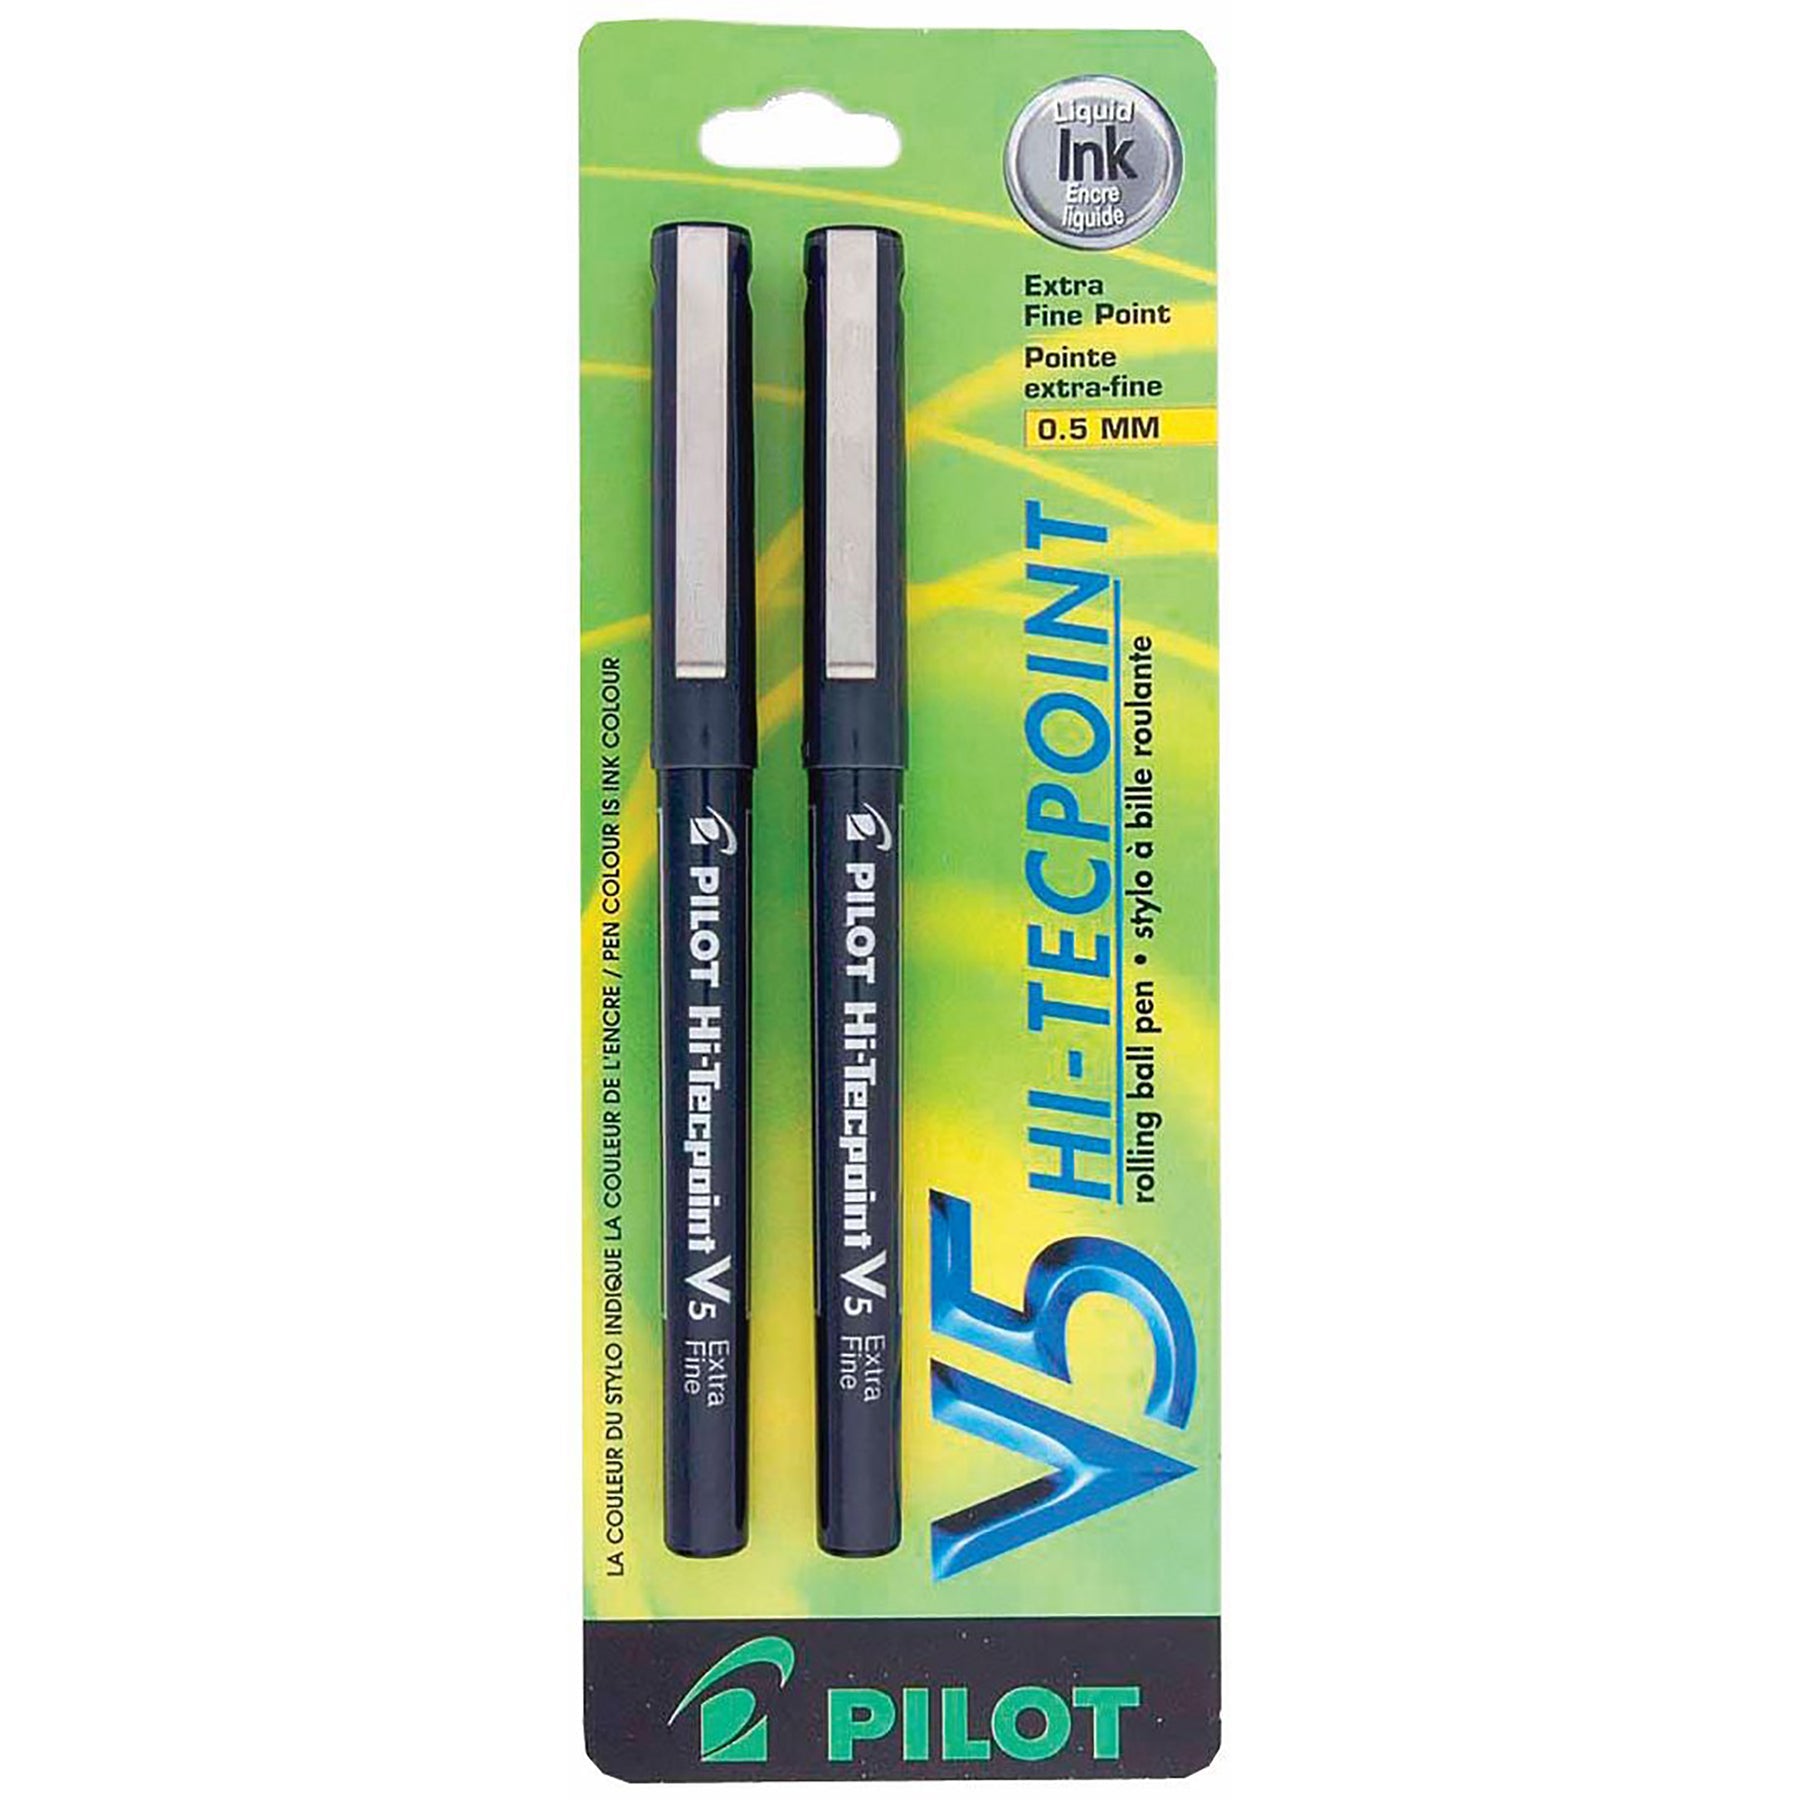 Pilot Hi-Tecpoint 2 Pens - Black Liquid Ink 0.5mm